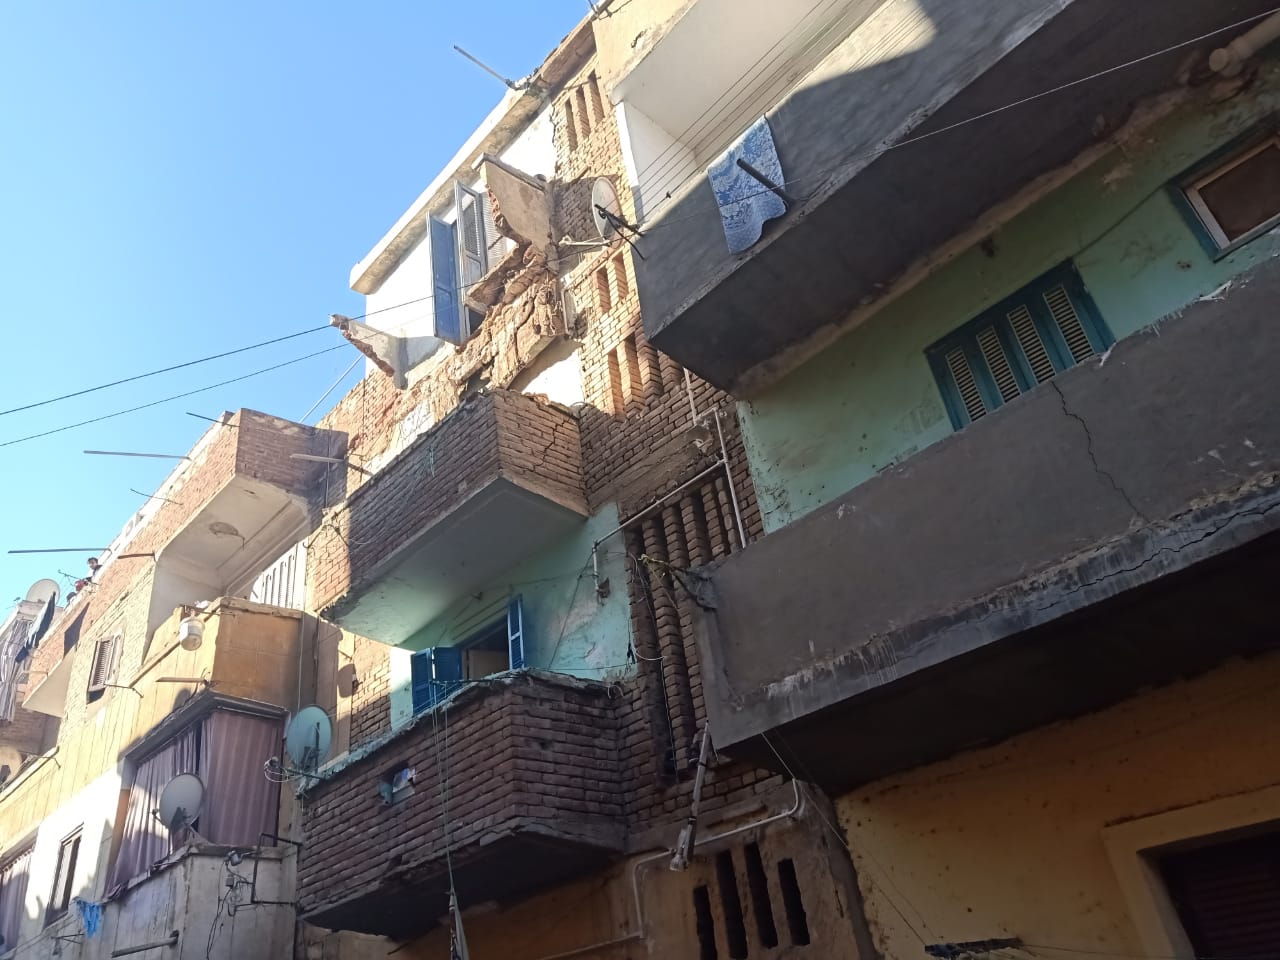   صور||محافظ كفرالشيخ إخلاء منزل مكون من 3 طوابق بحى غرب من السكان لإنهيار بلكونه 